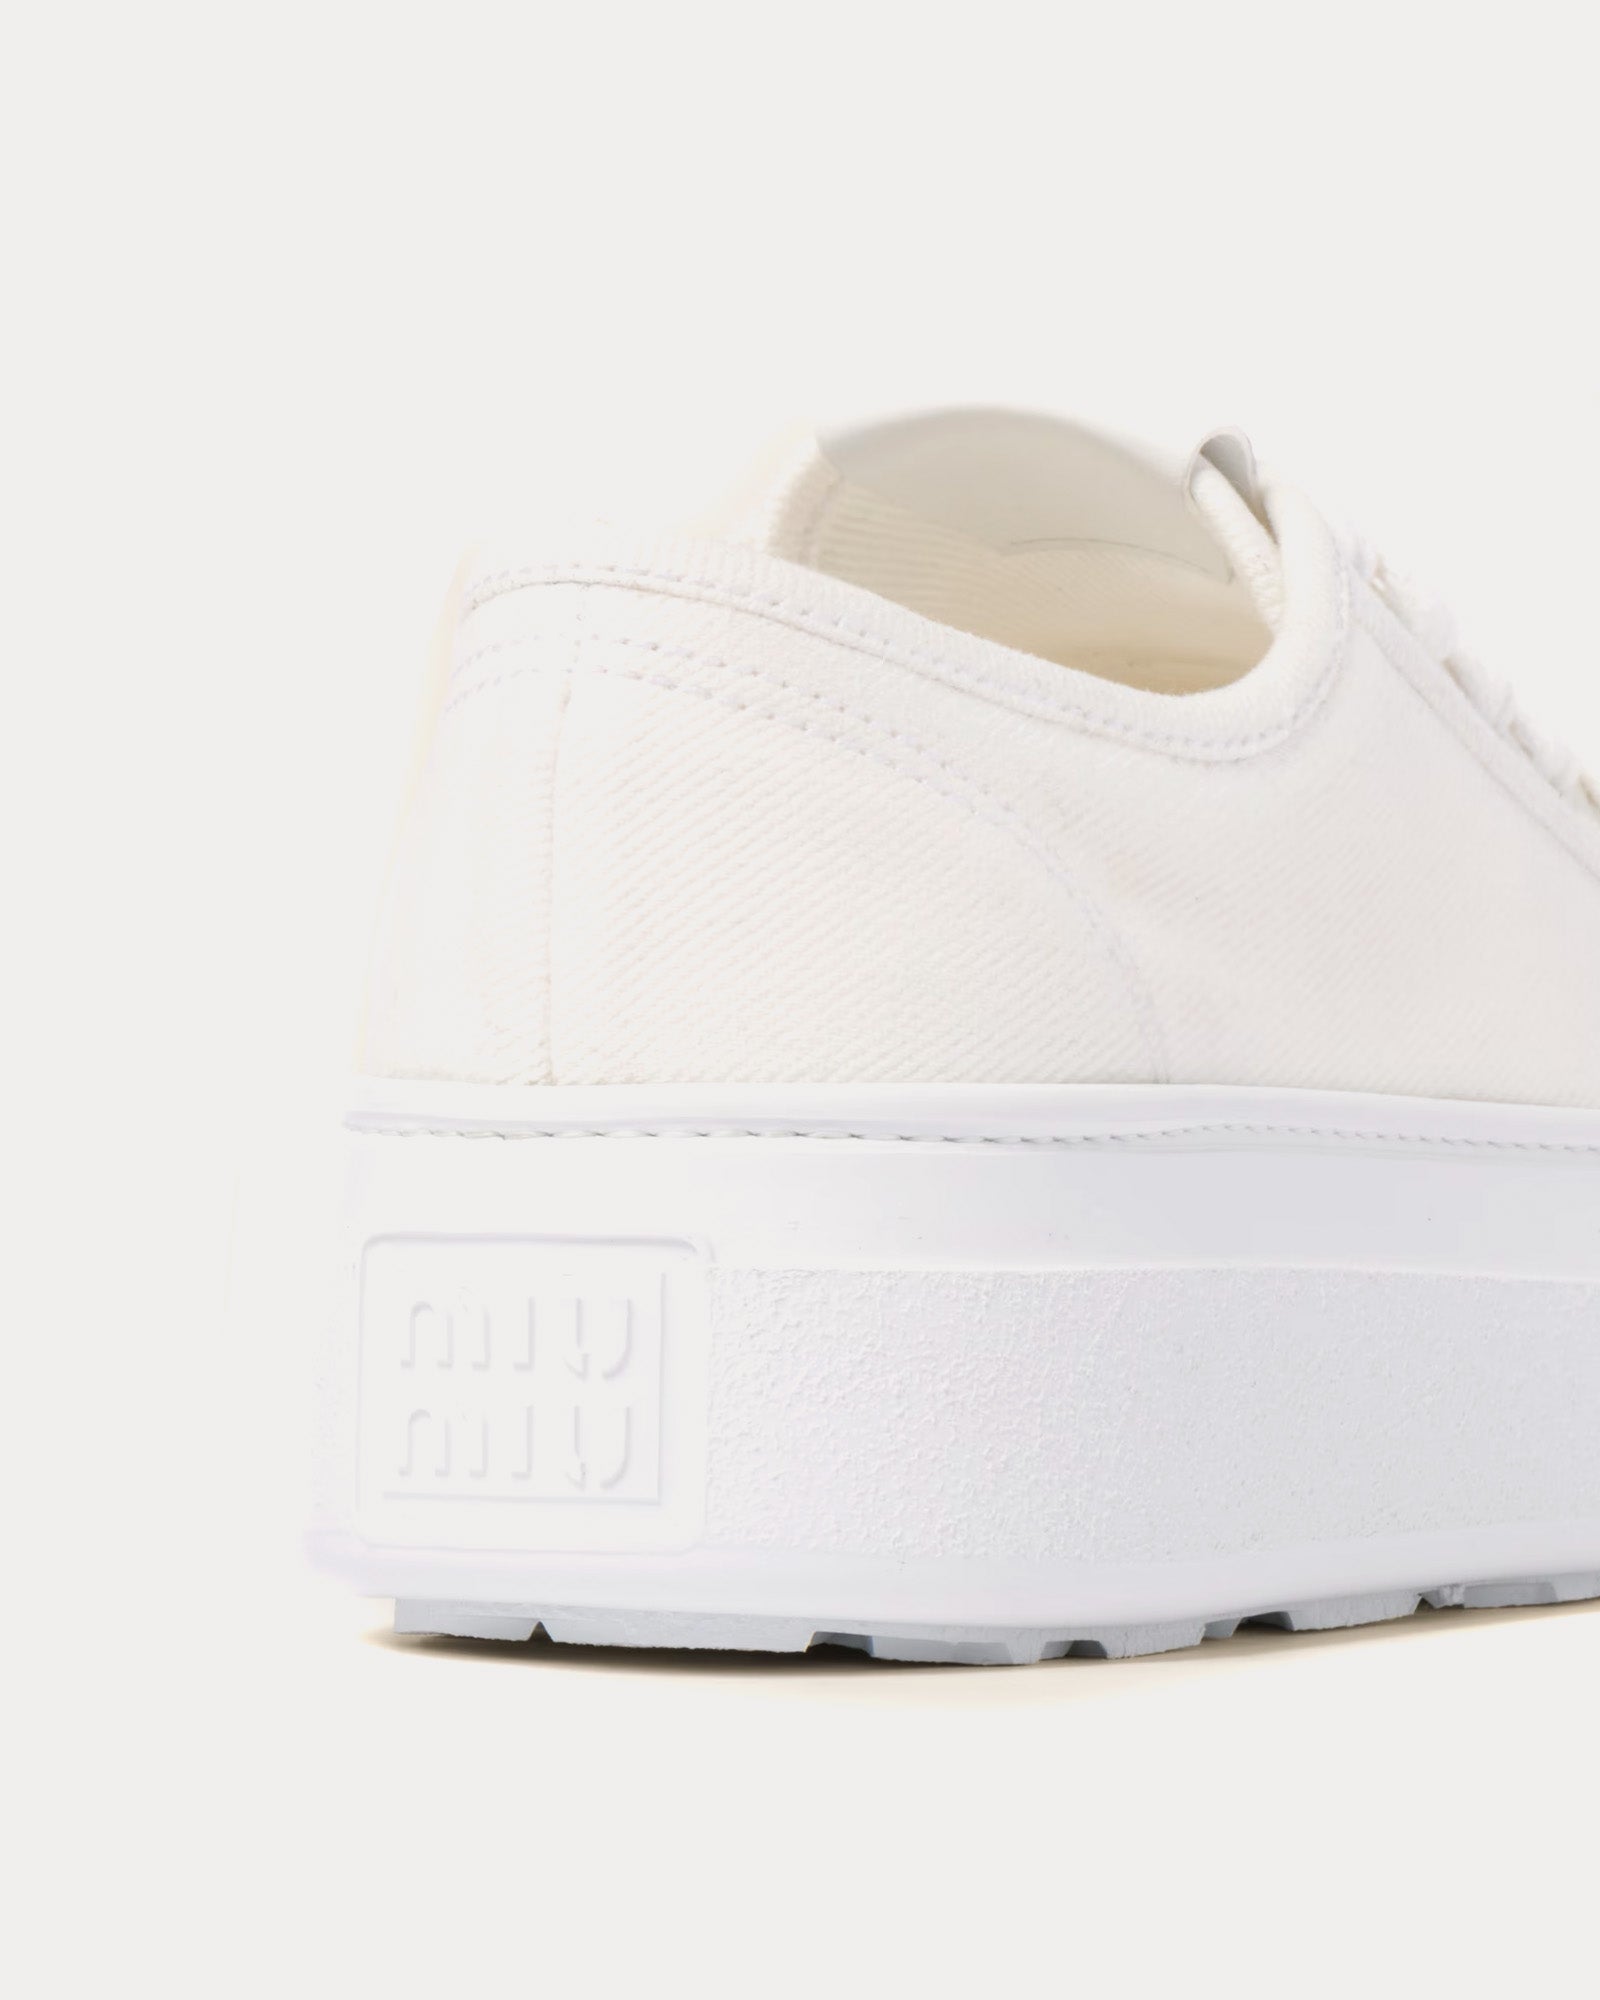 Miu Miu - Denim White Low Top Sneakers